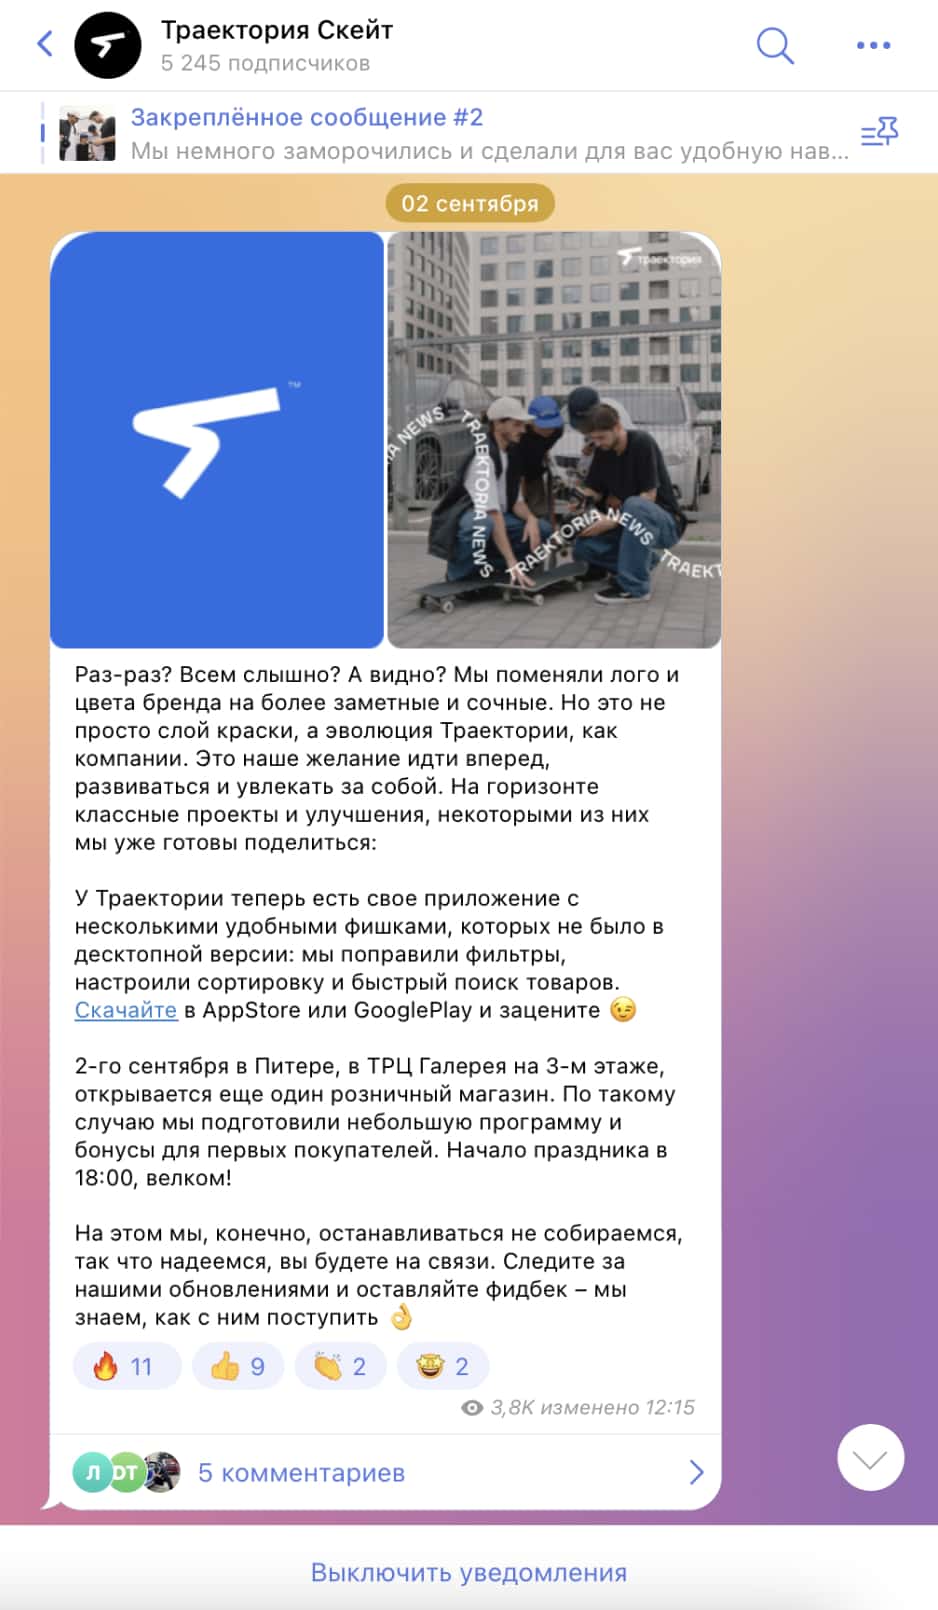 Анонс мобильного приложения в Telegram-канале «Траектория Скейт»